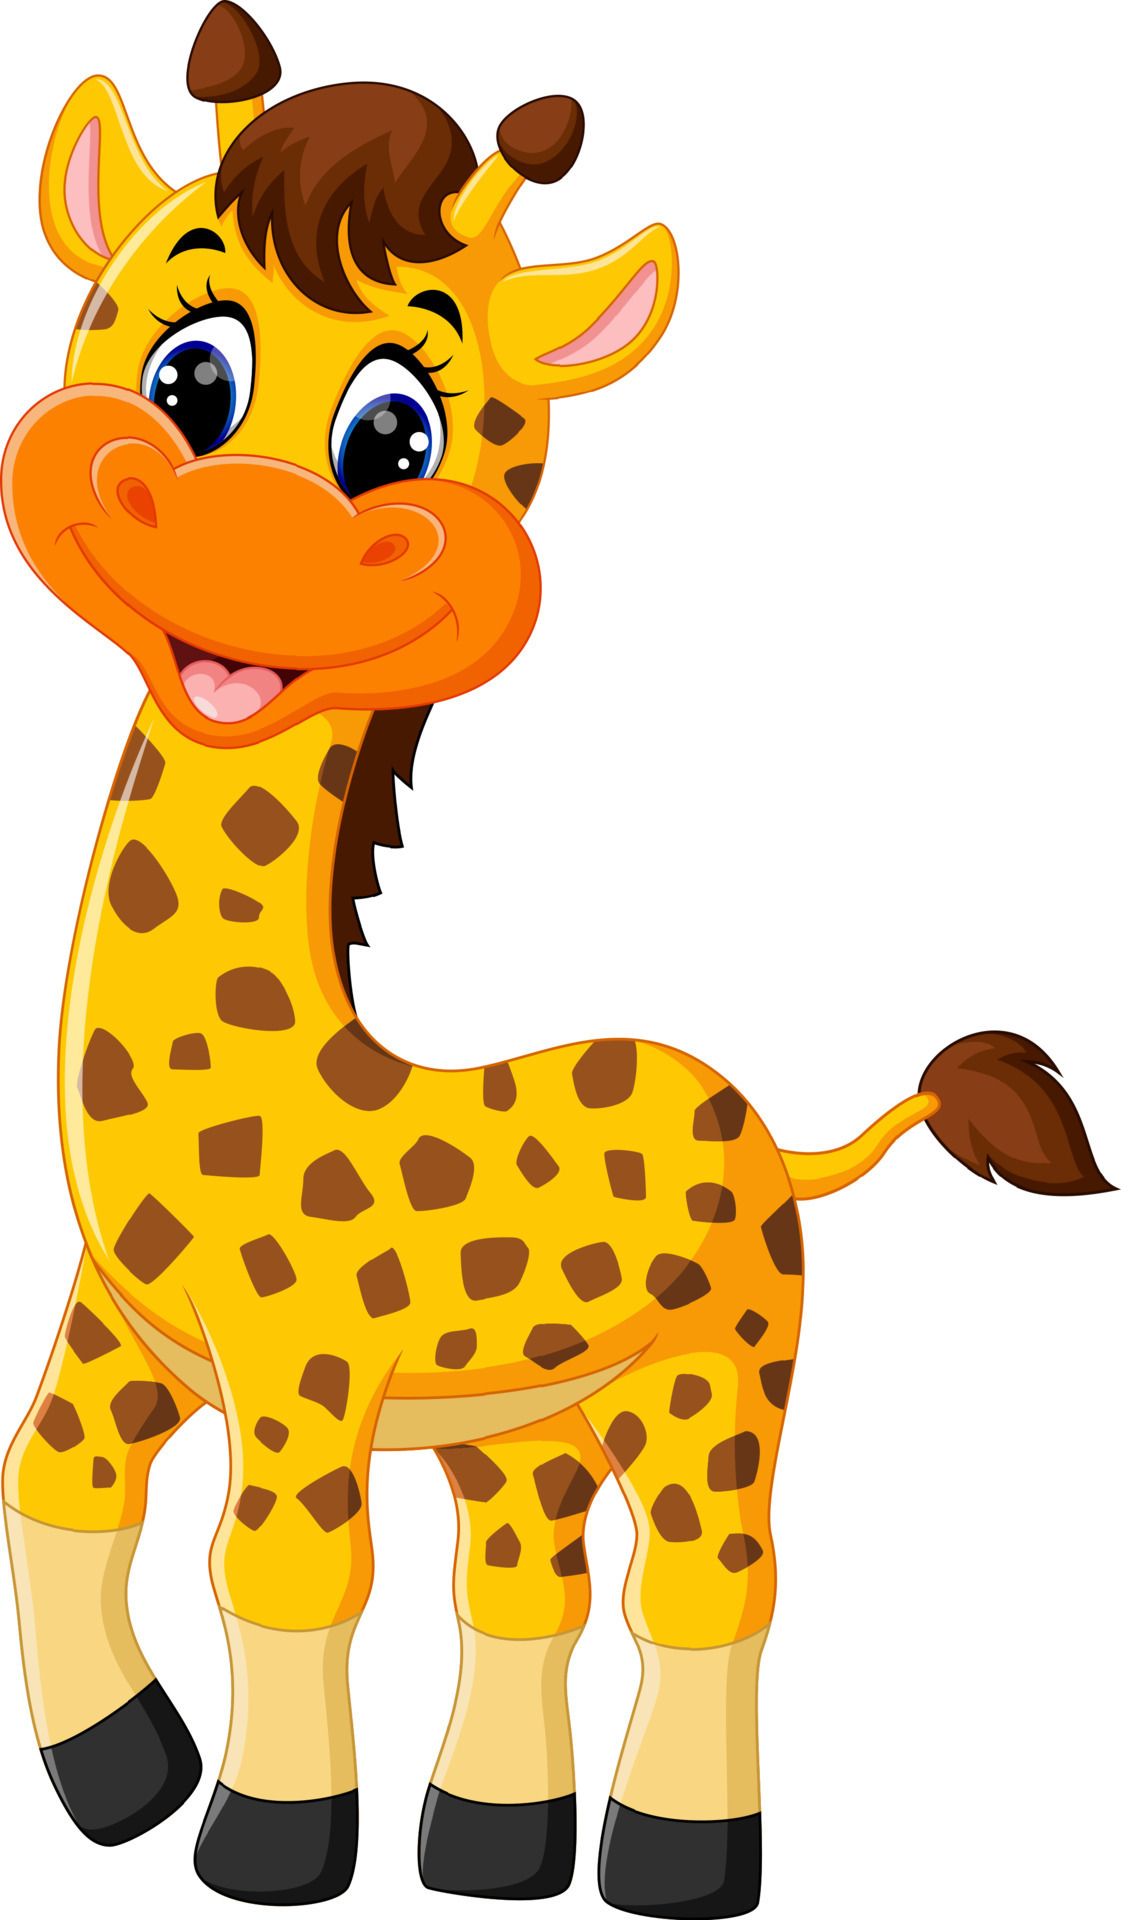 illustration of cute giraffe cartoon 7916231 Vector Art at Vecteezy